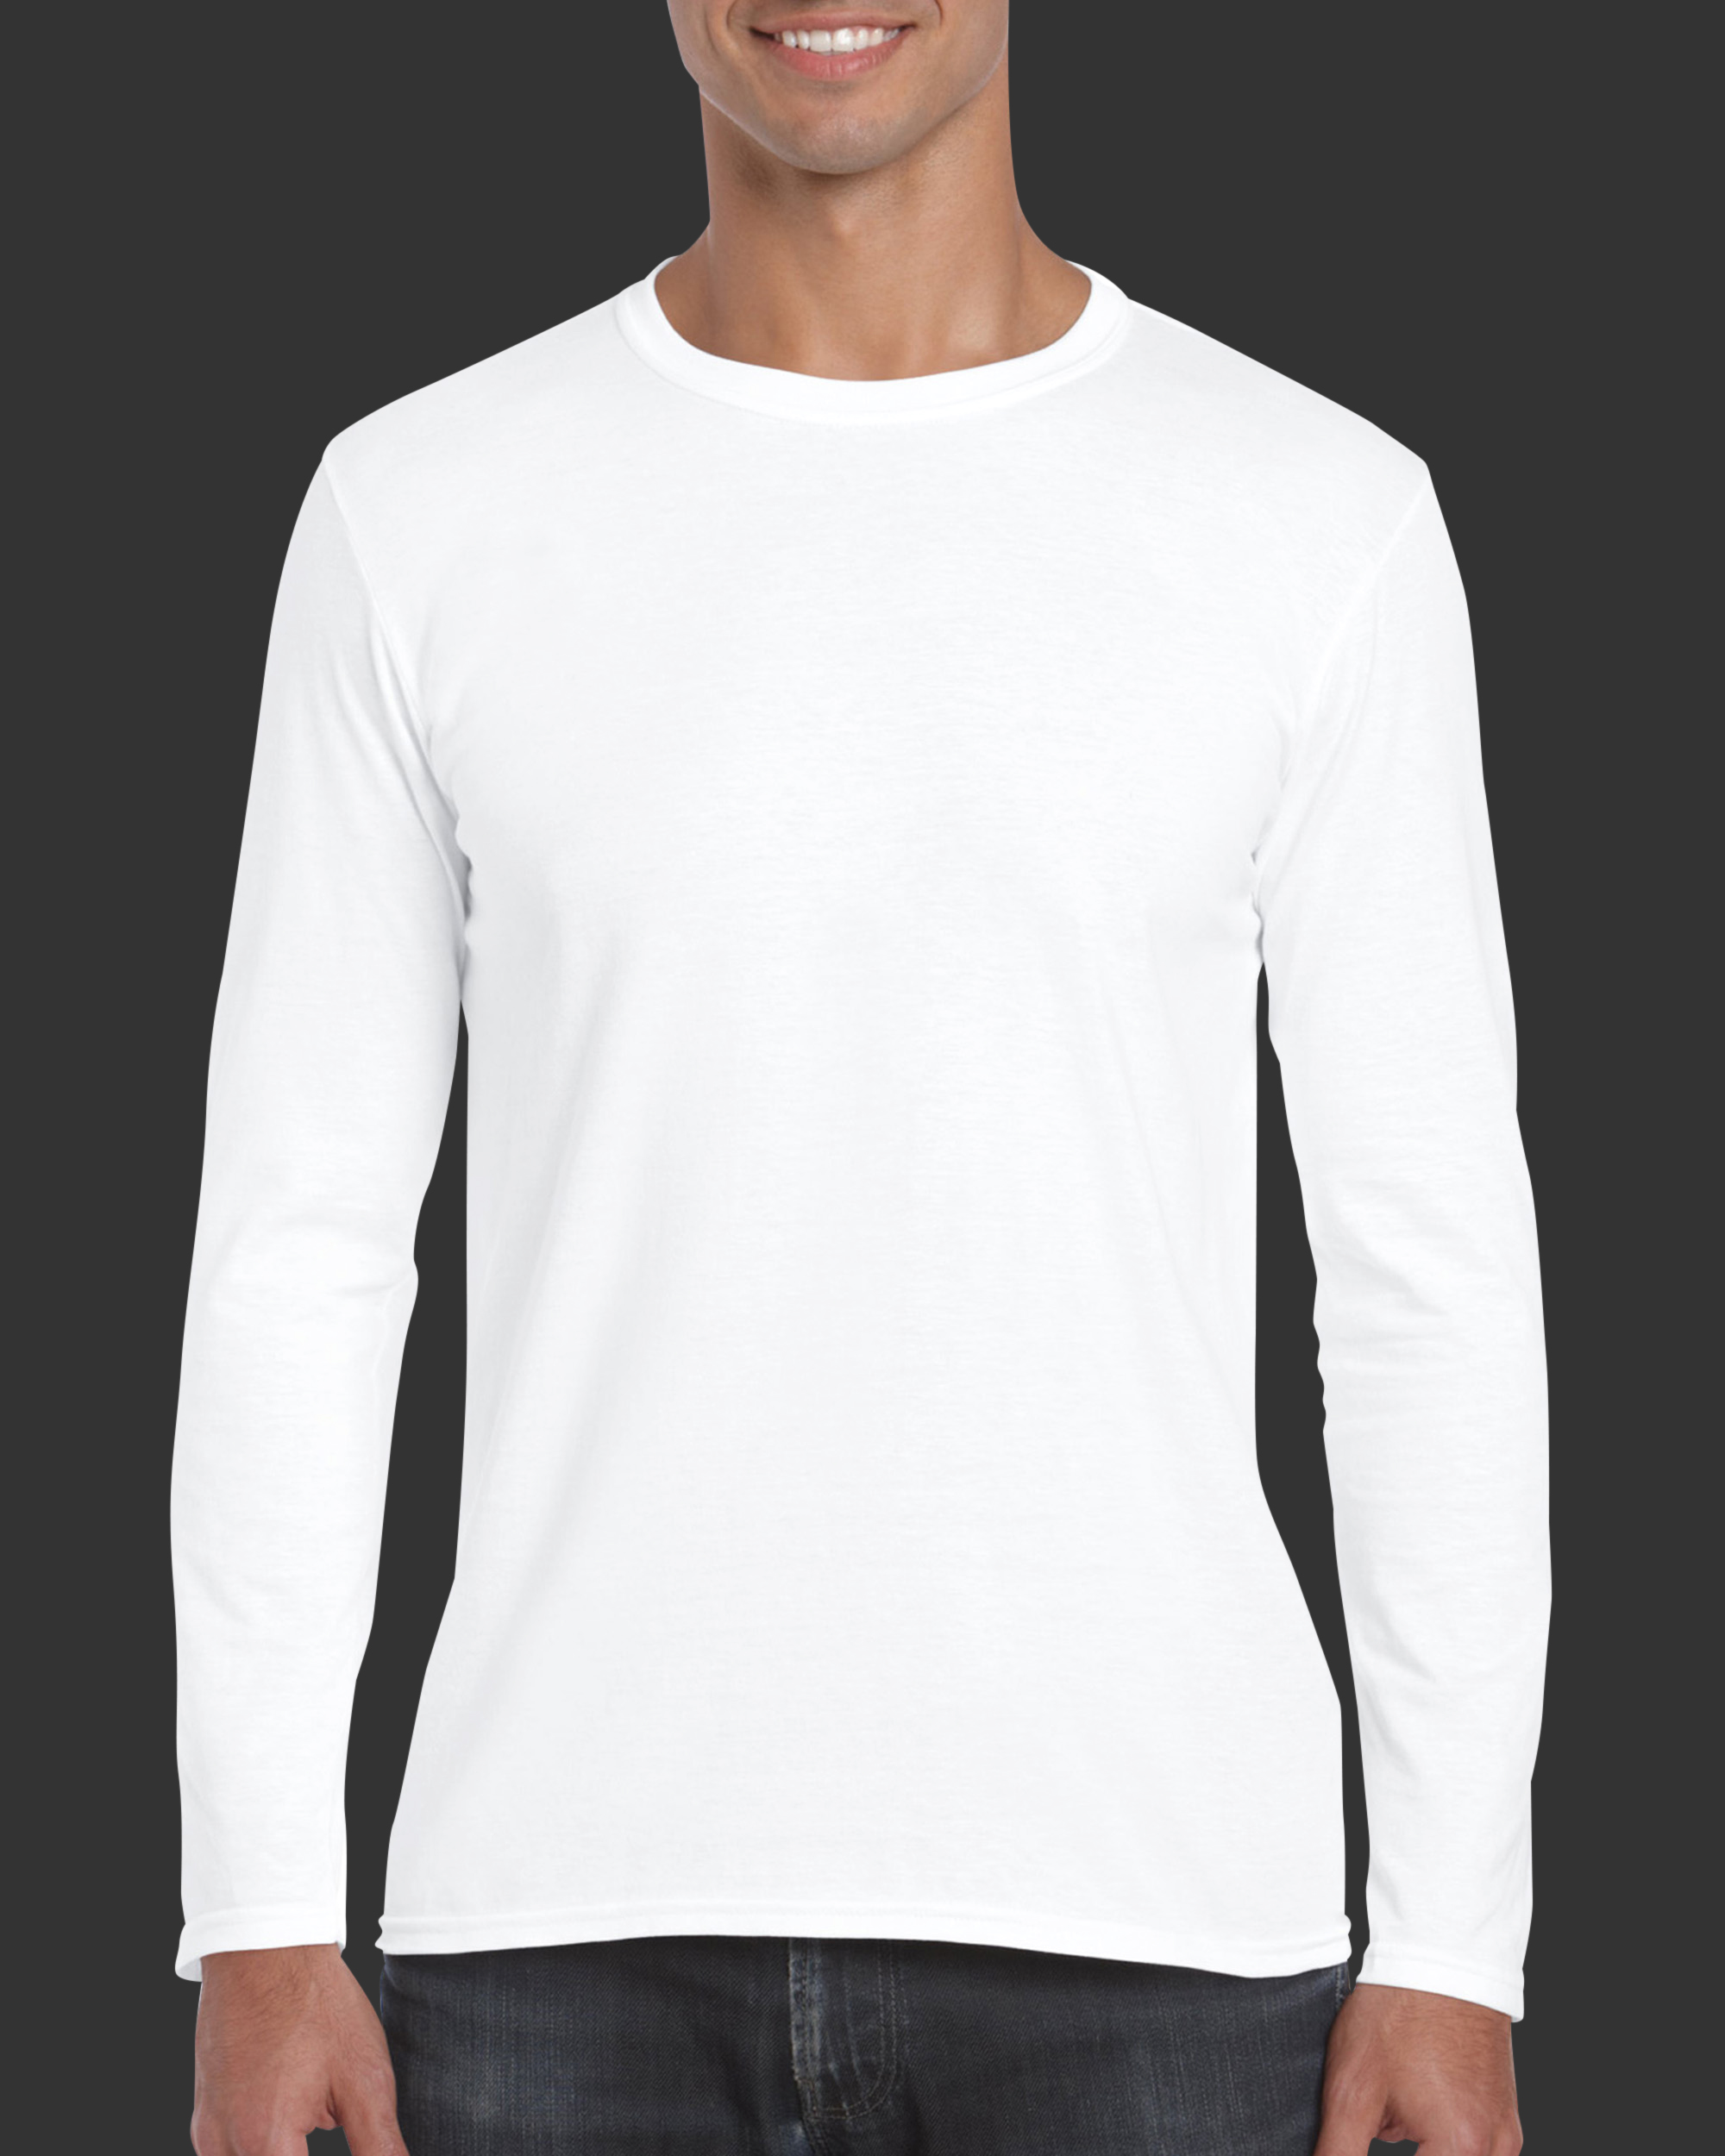 เสื้อยืด GILDAN 76400  Premium Cotton  แขนยาว คอตตอล 100% Cotton 100% เสื้อยืดราคาถูก เสื้อยืดคุณภาพ